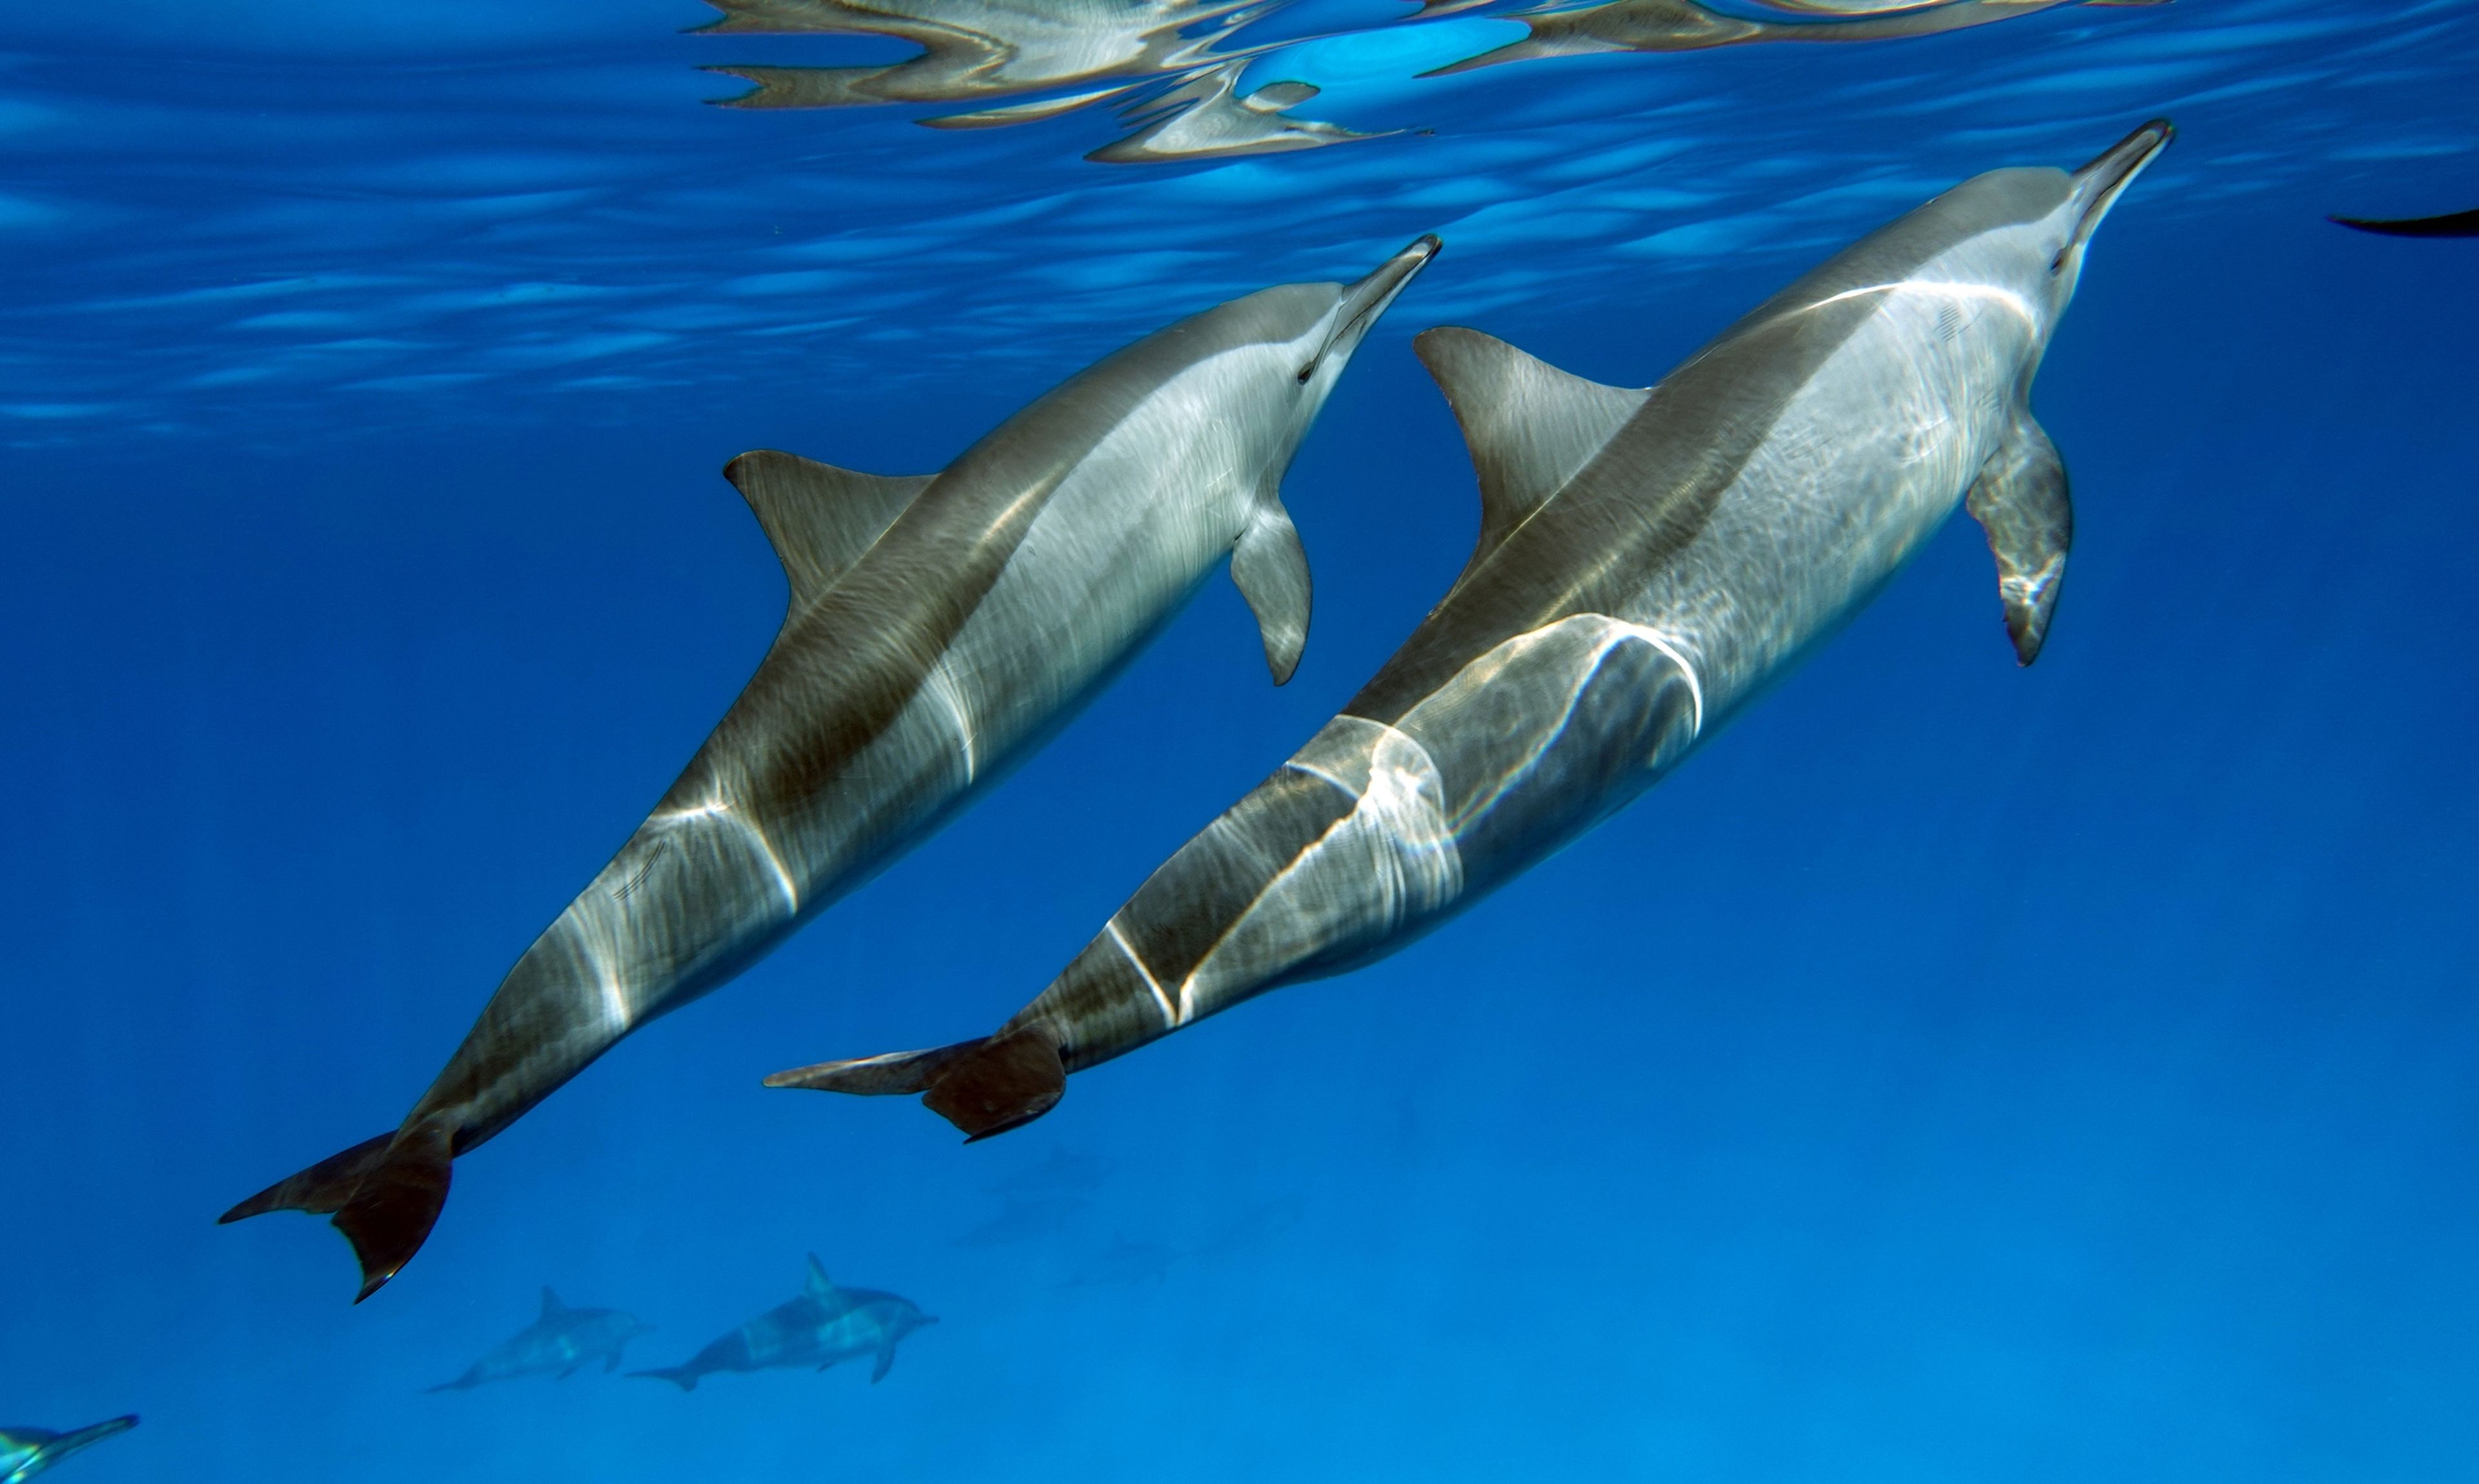 Descubren que los delfines también usan medicinas para curarse